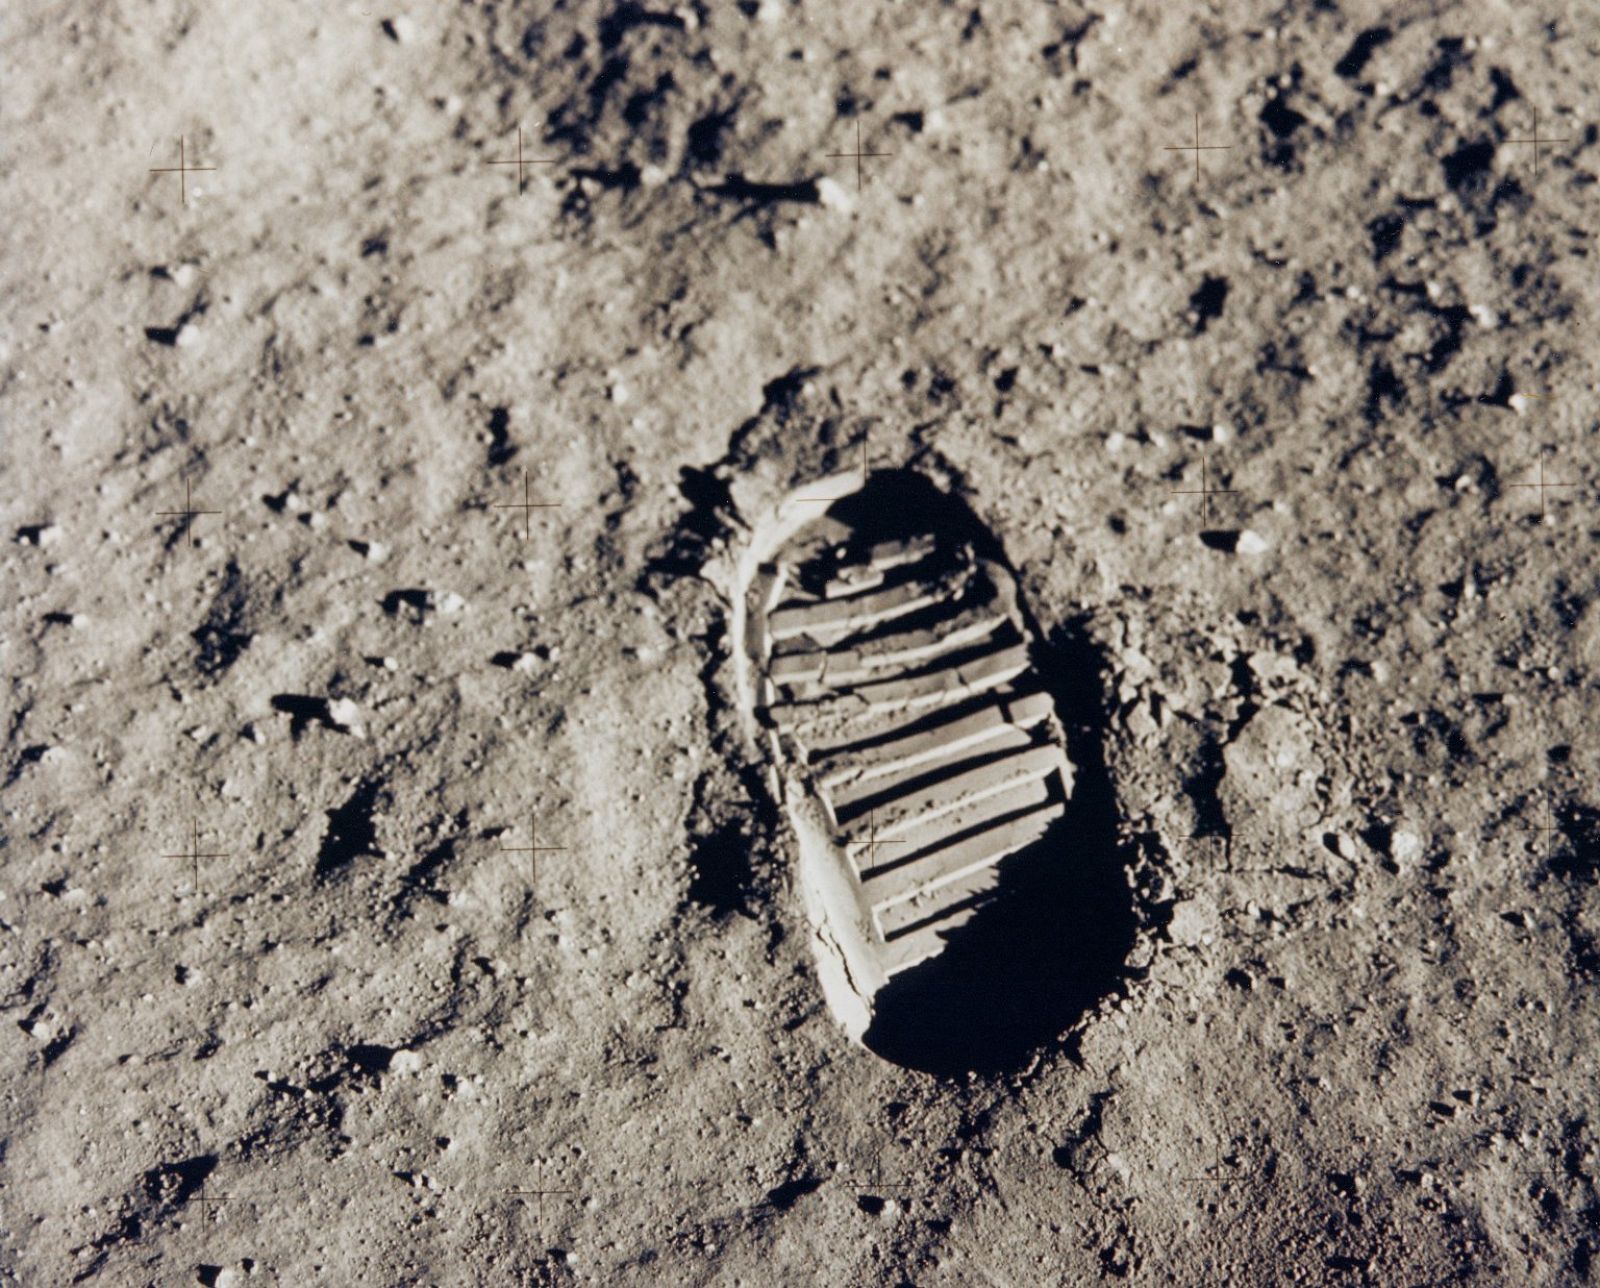 Pisada de Buzz Aldrin en la misión del Apollo 11 (20/7/69).